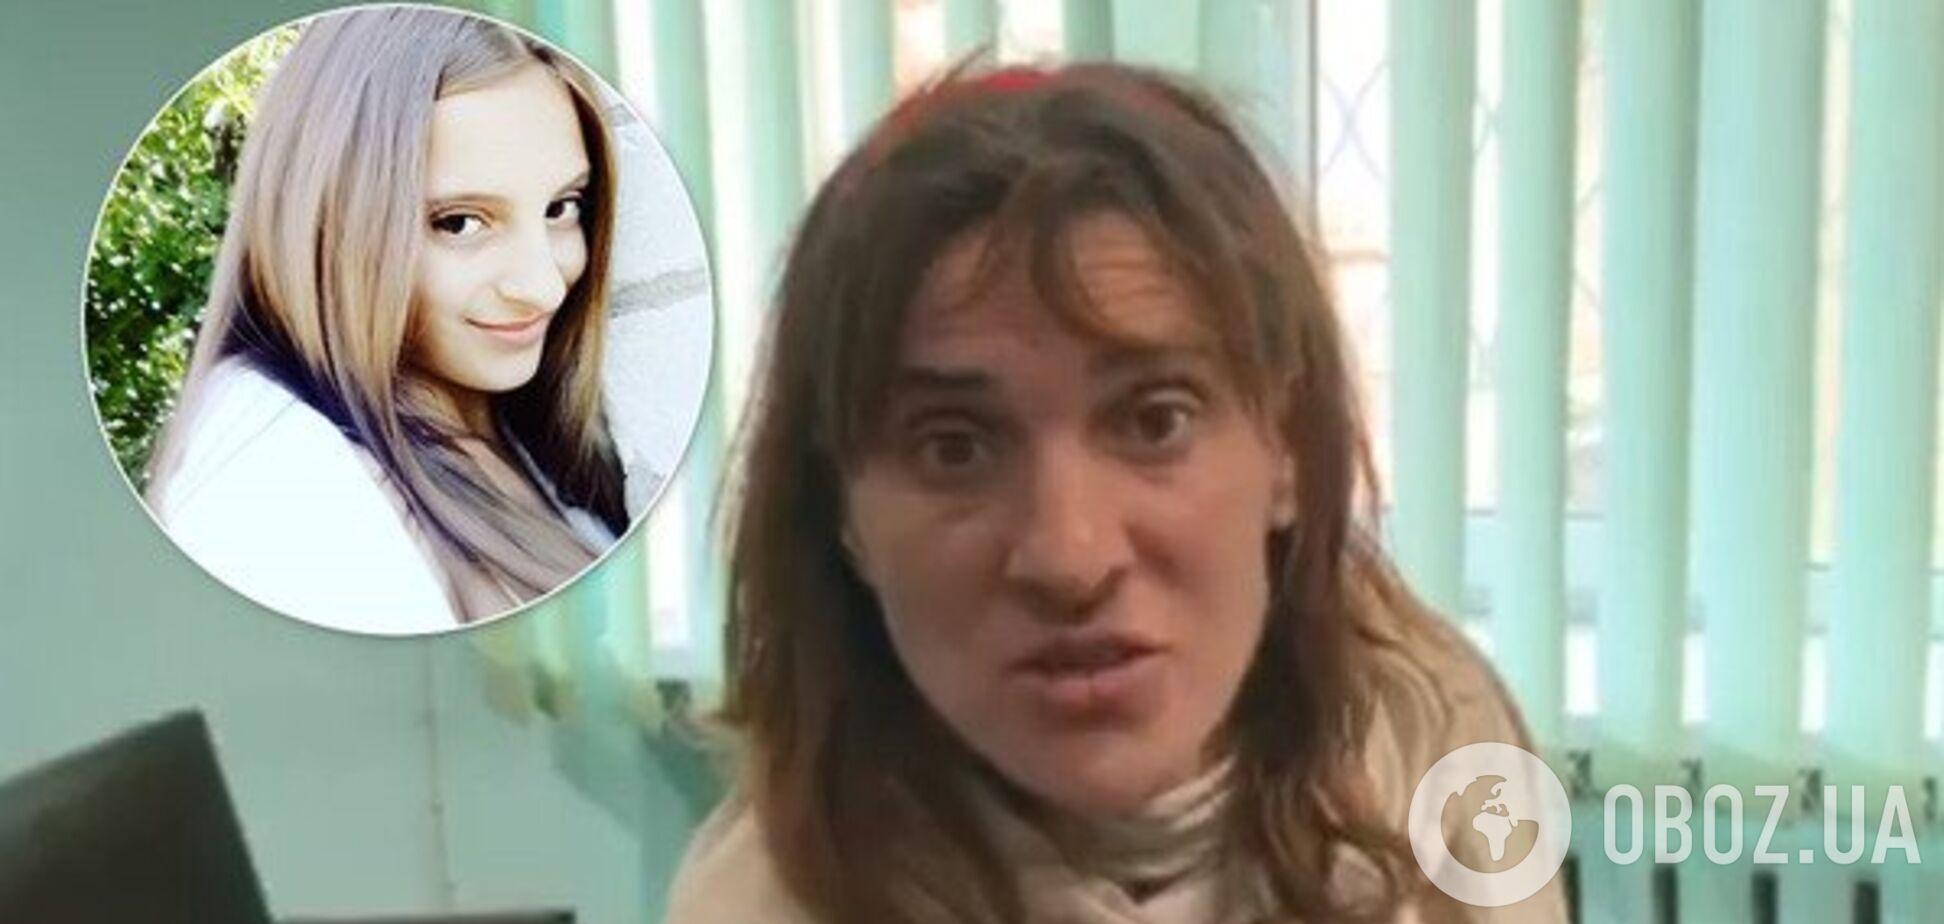 Подозреваемая в убийстве дочери под Харьковом просила домашний арест: суд принял решение